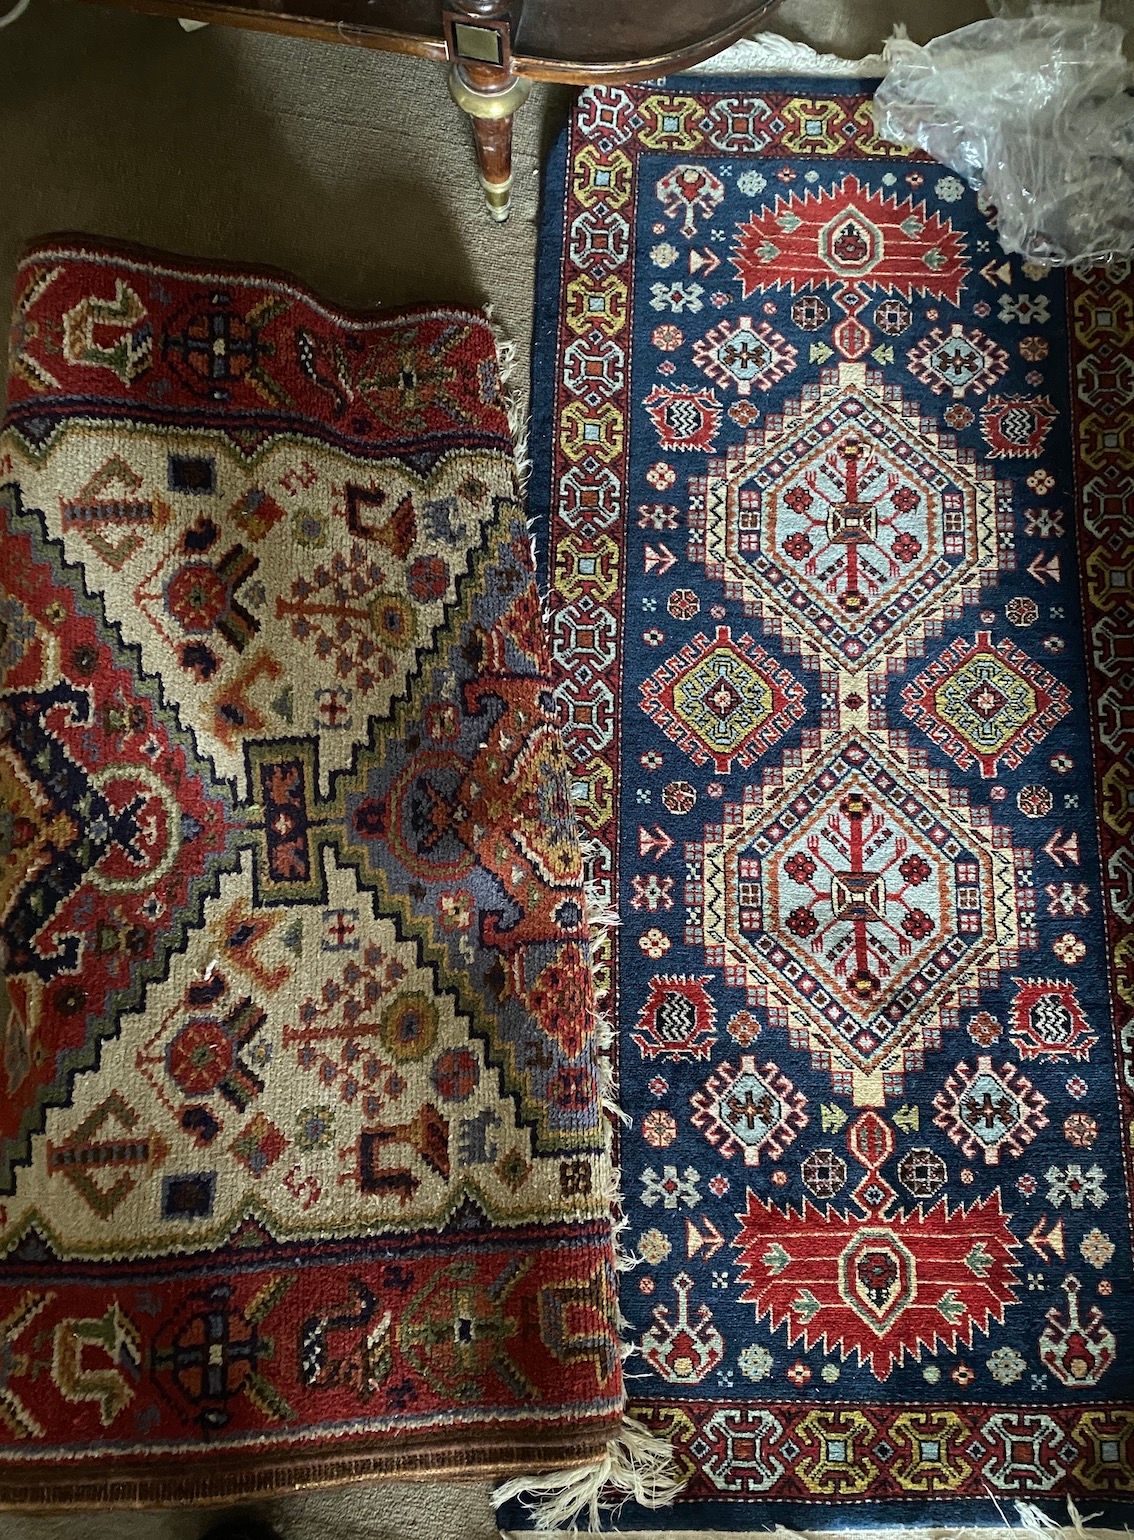 Null 东方画廊地毯。

附上另一张较小的照片

(2022年1月20日出售)